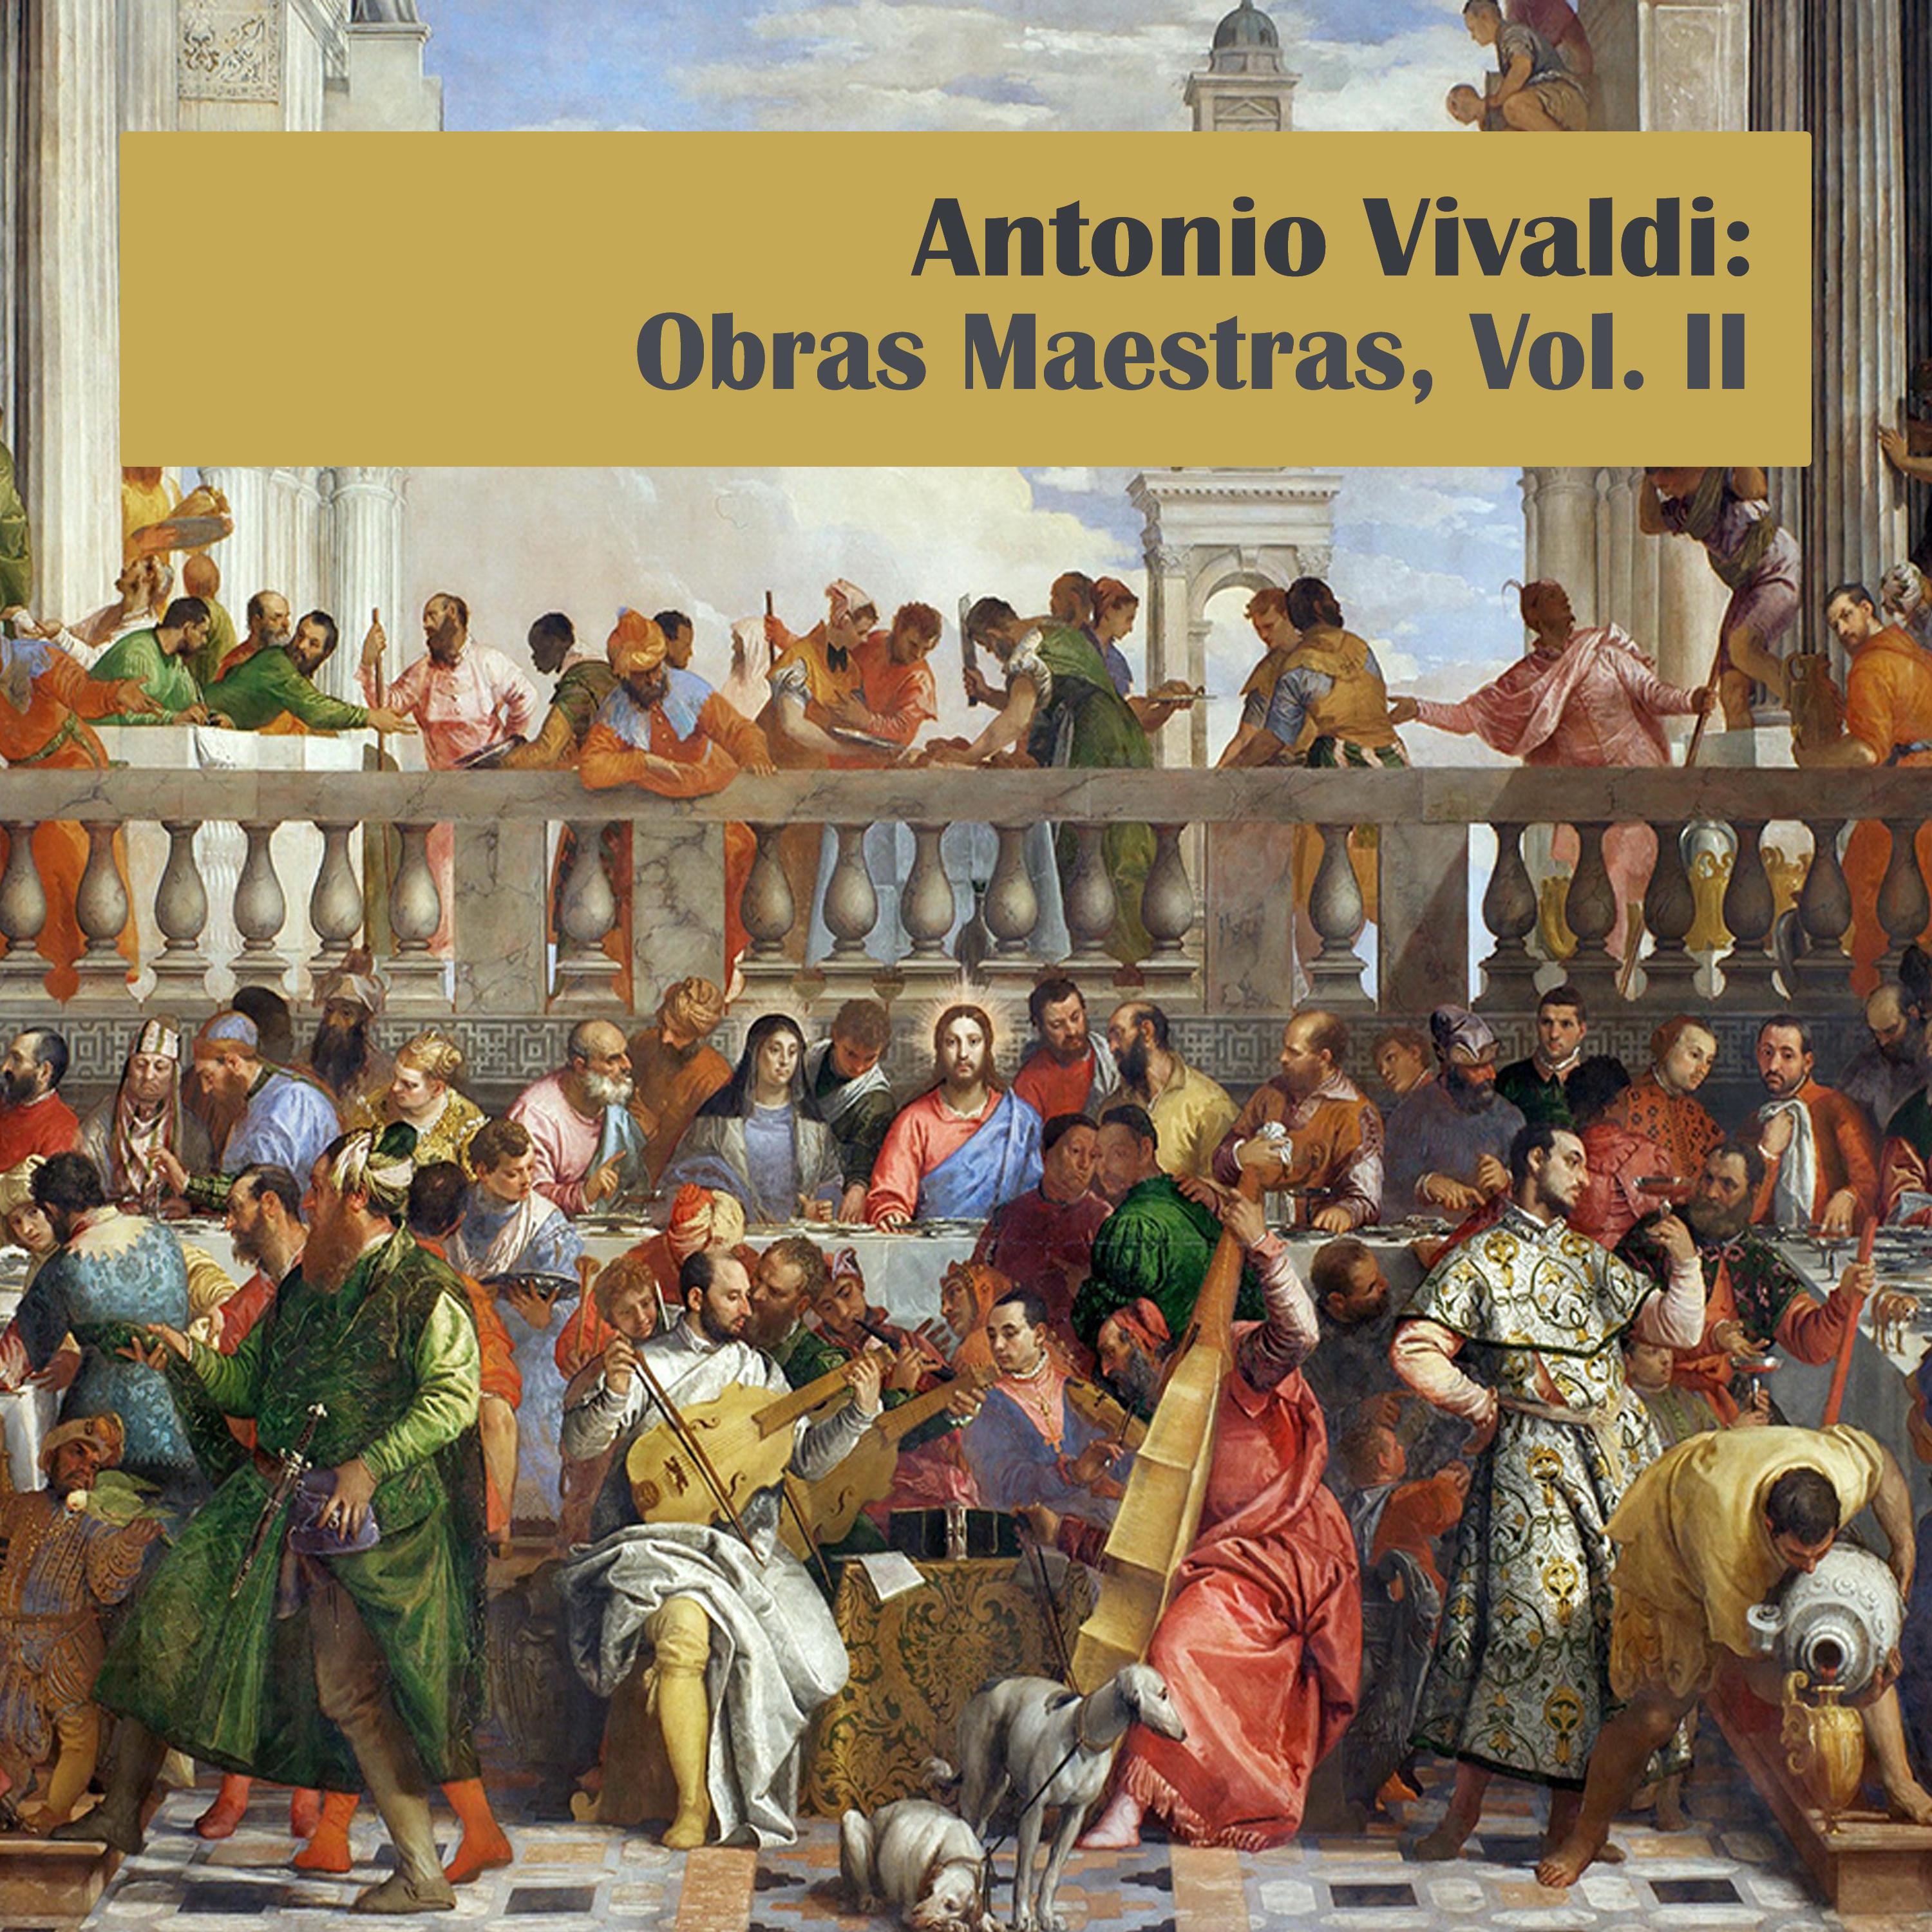 Antonio Vivaldi: Obras Maestras, Vol. II